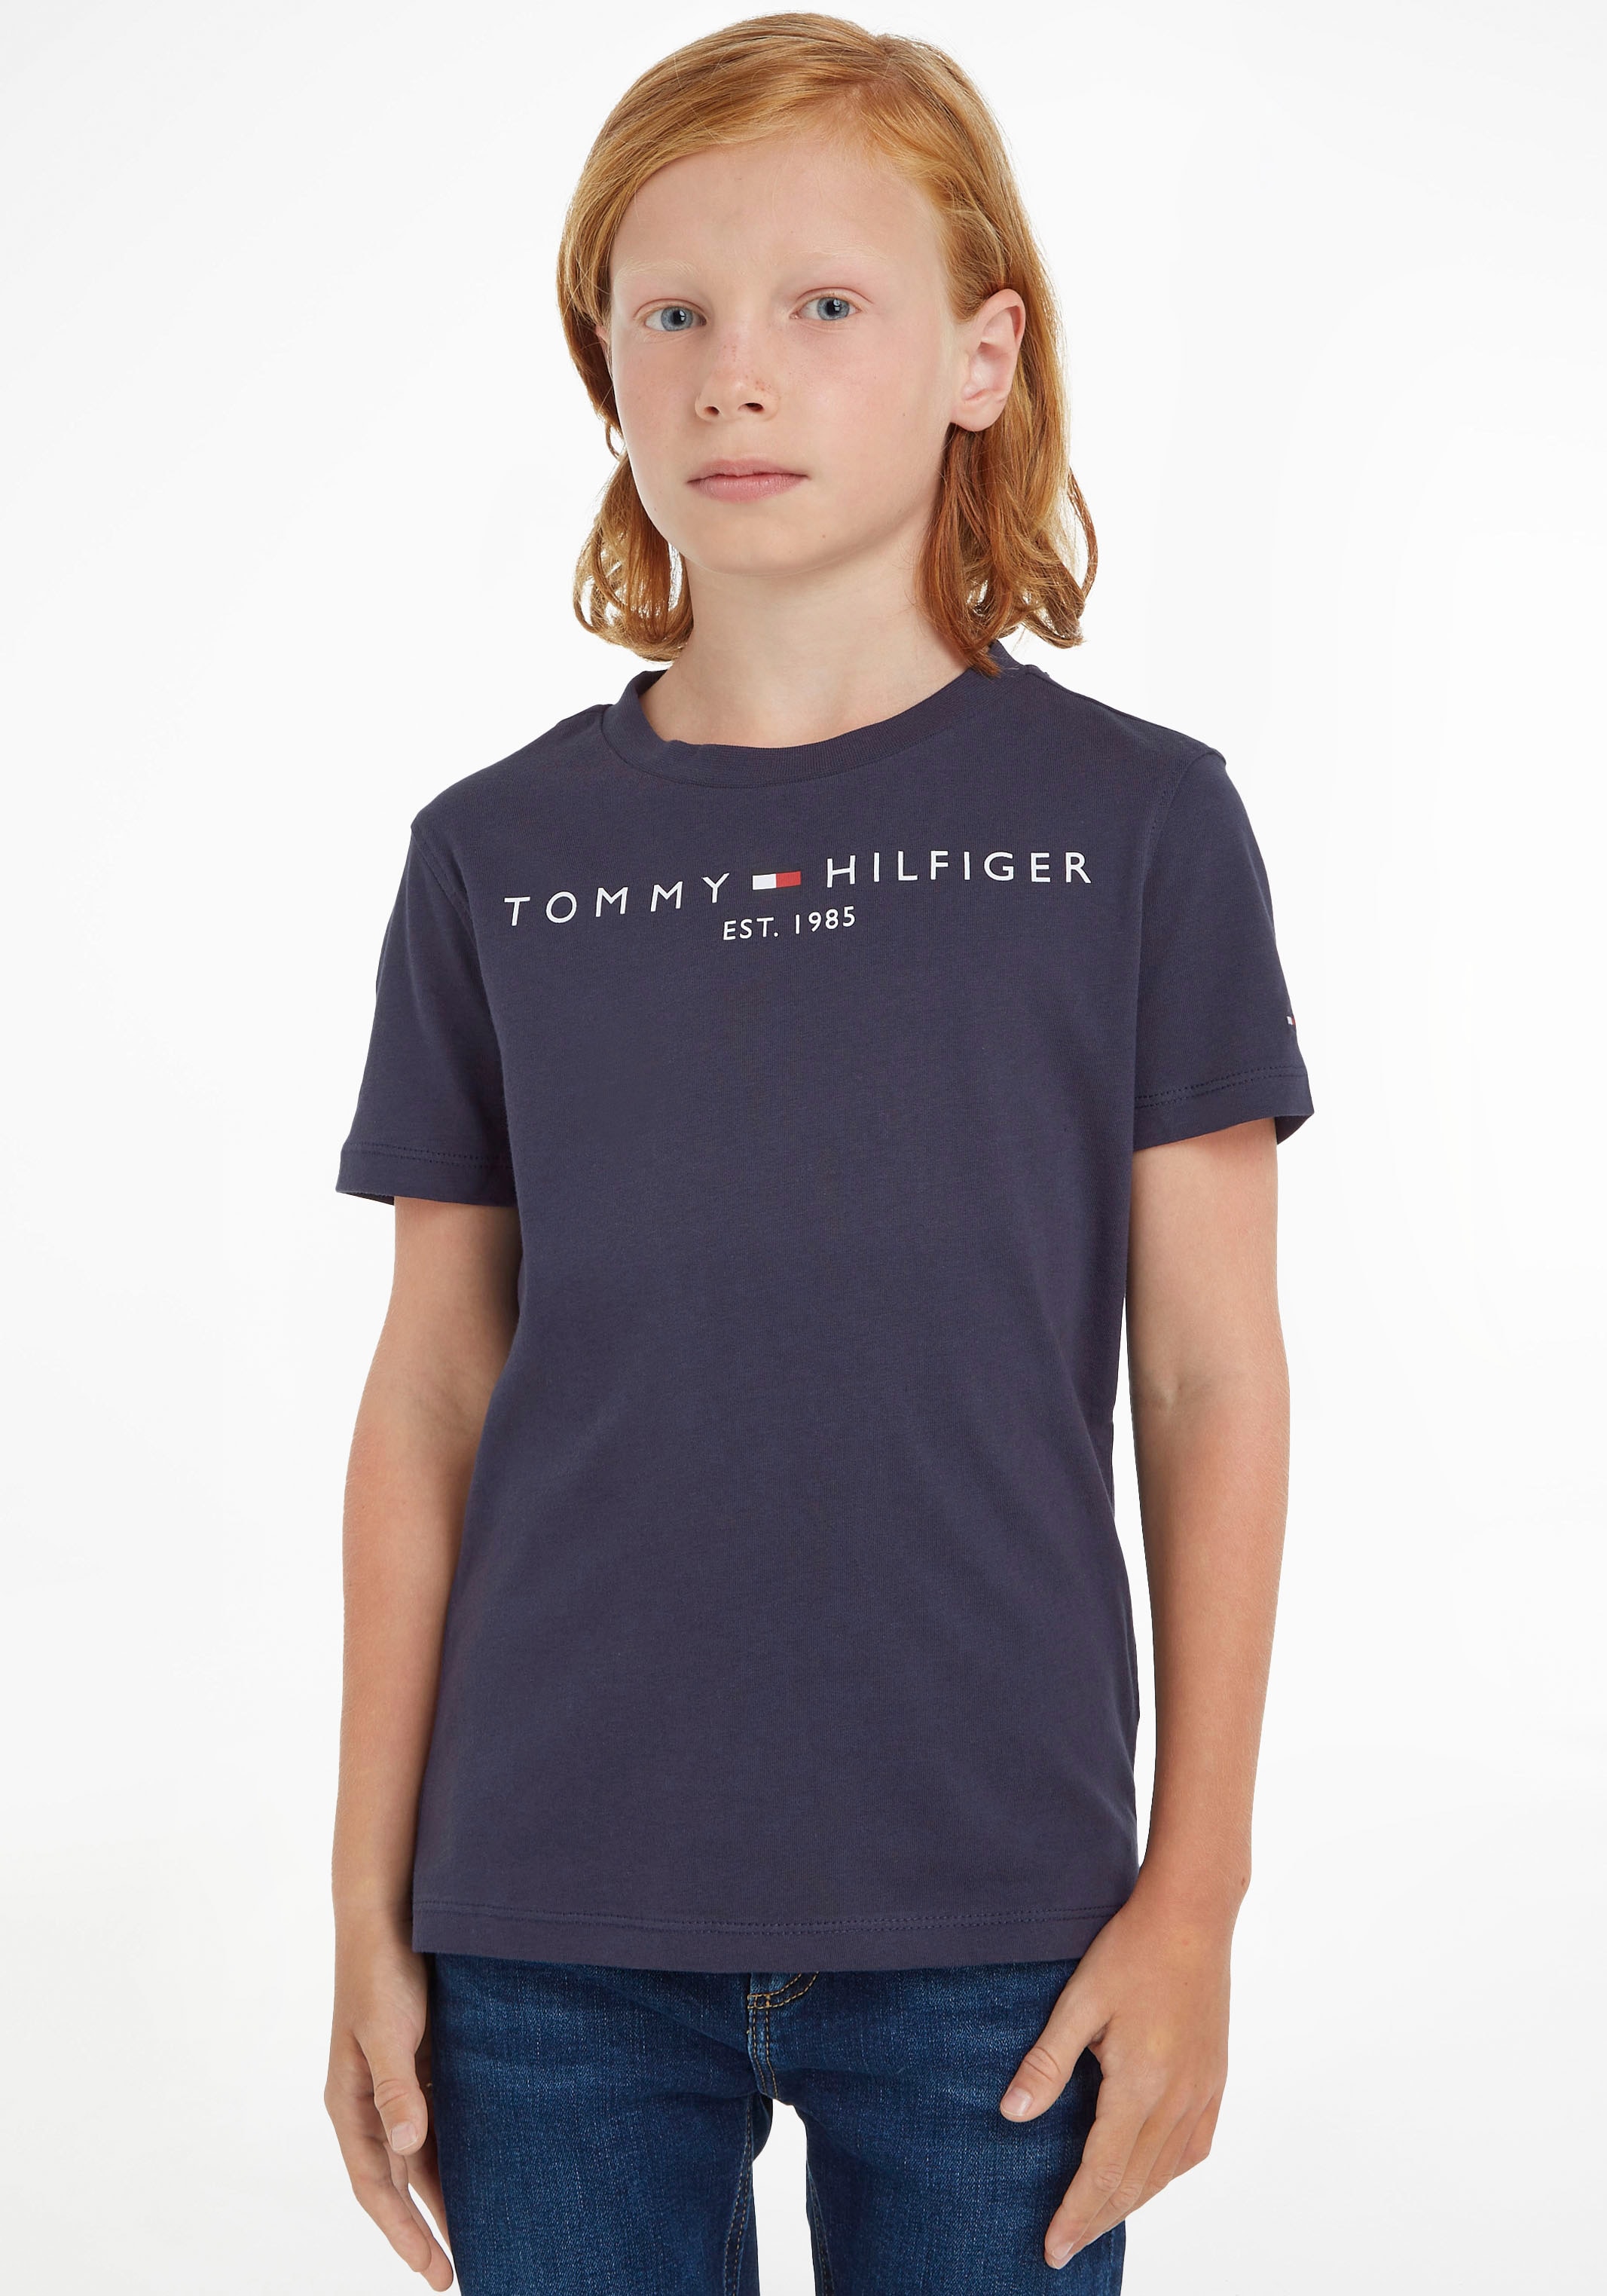 Tommy Hilfiger T-Shirt Mädchen Jungen Kids Junior kaufen und MiniMe,für »ESSENTIAL online Kinder TEE«